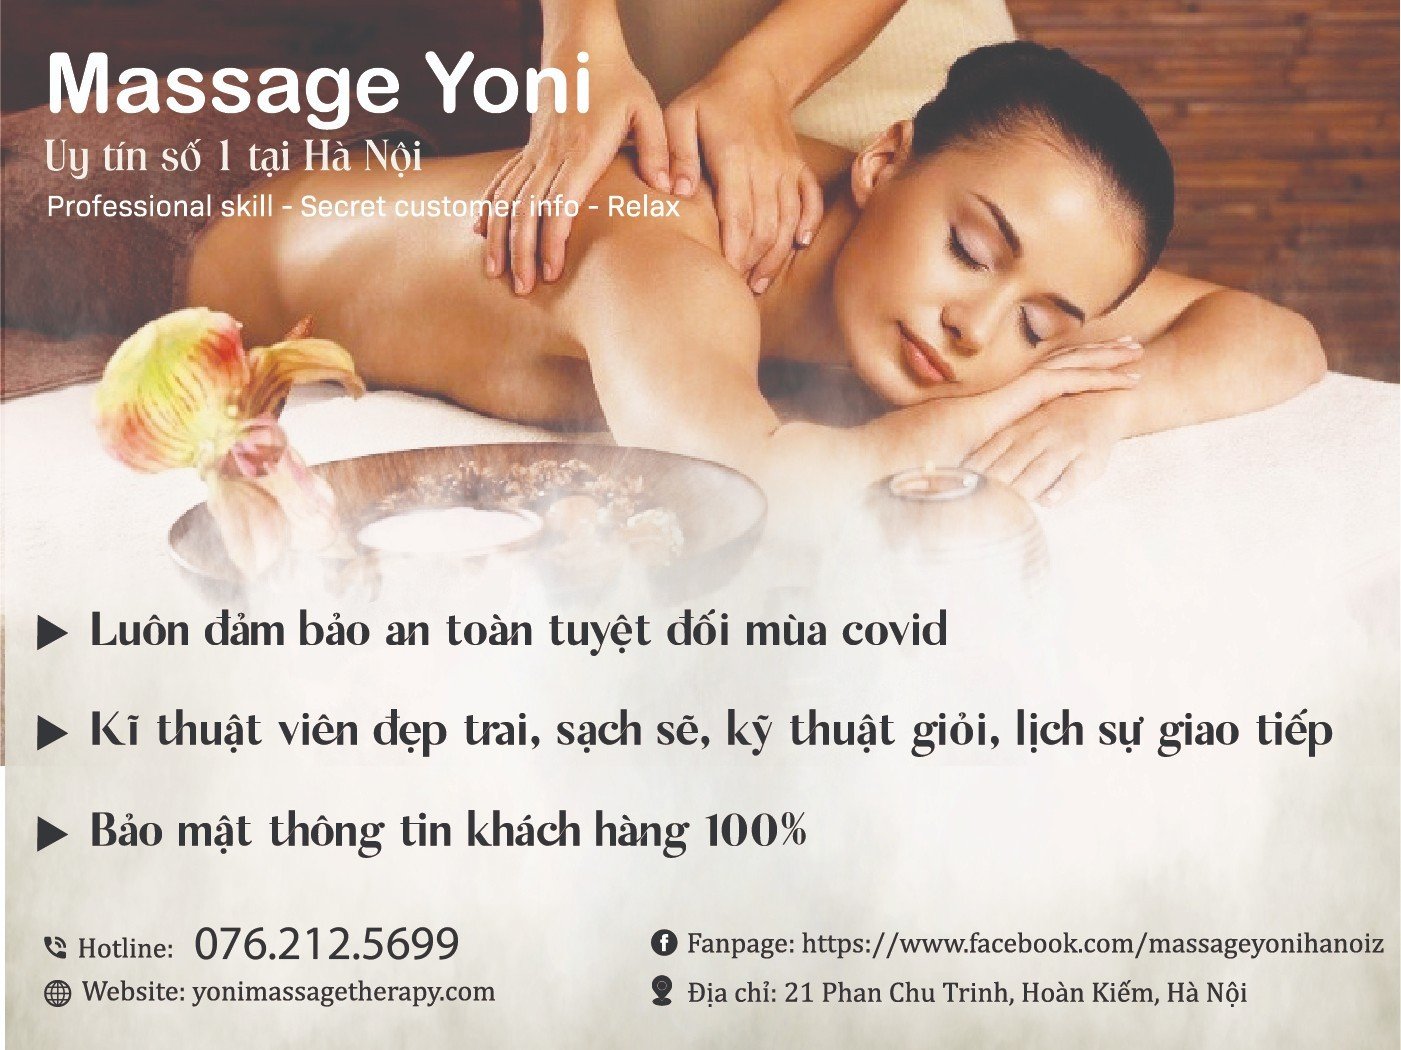 massage-yoni-ha-noi.jpg